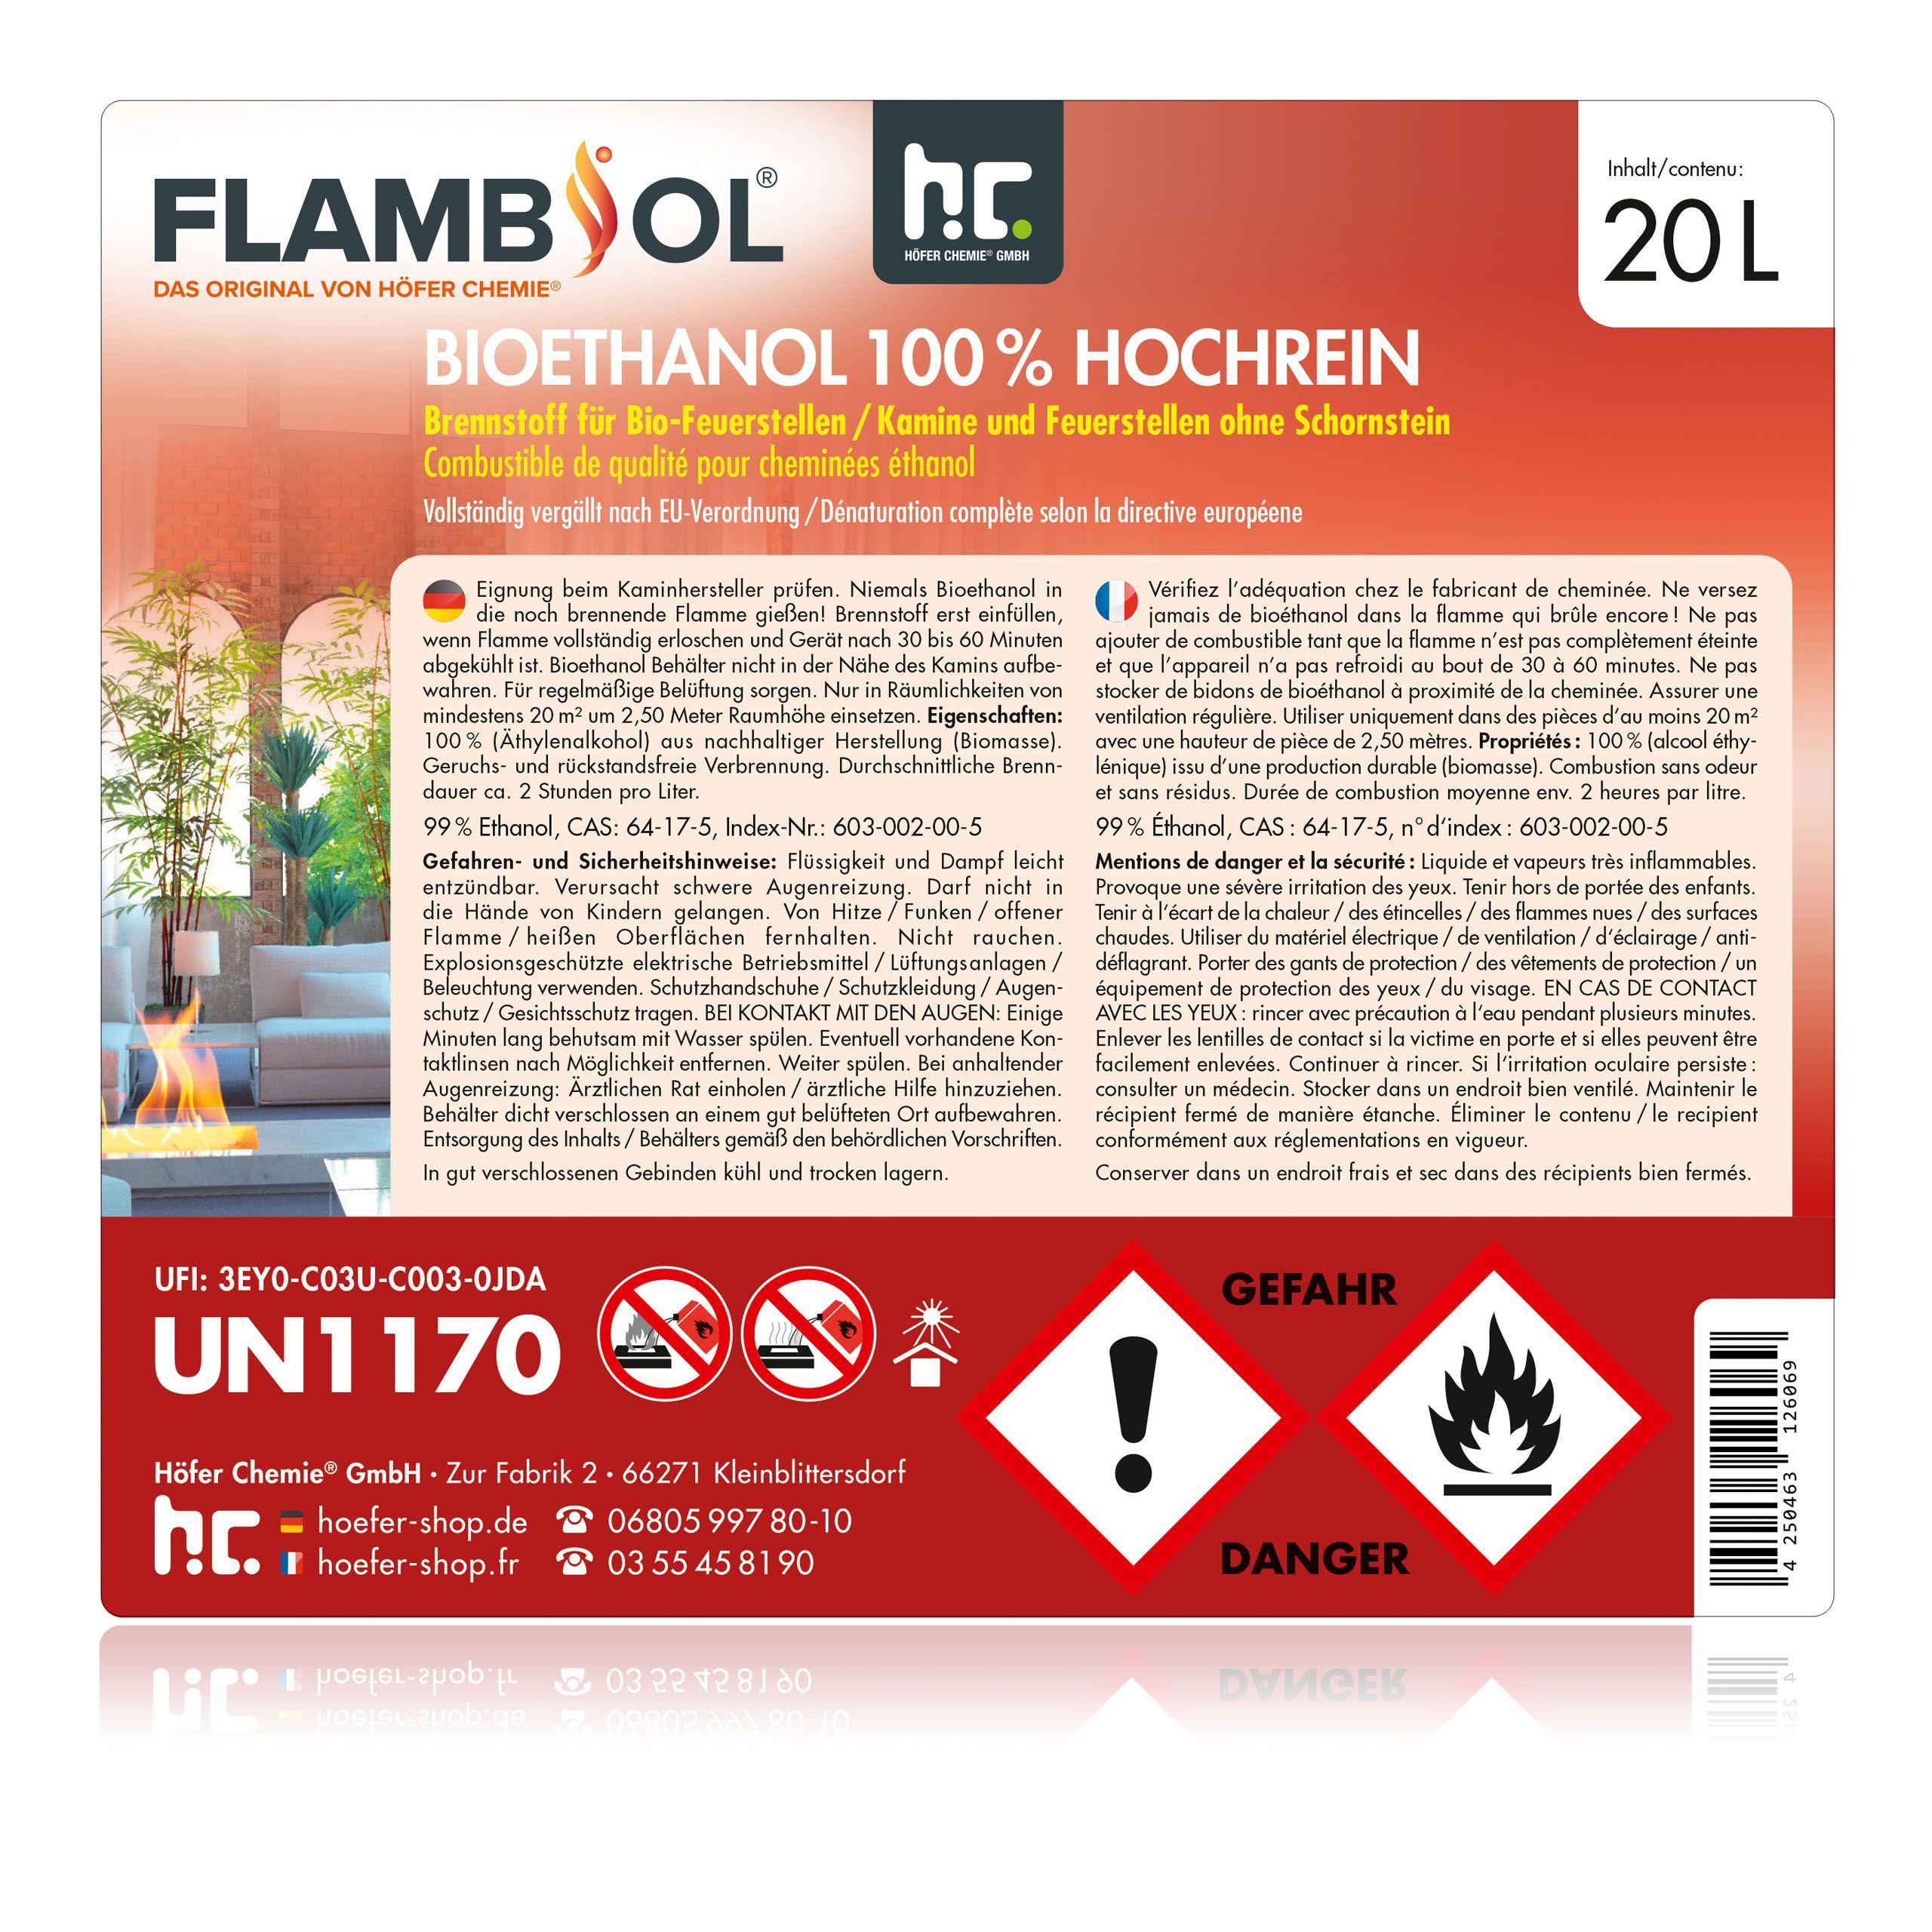 20 L FLAMBIOL® Bioethanol 100% Hochrein